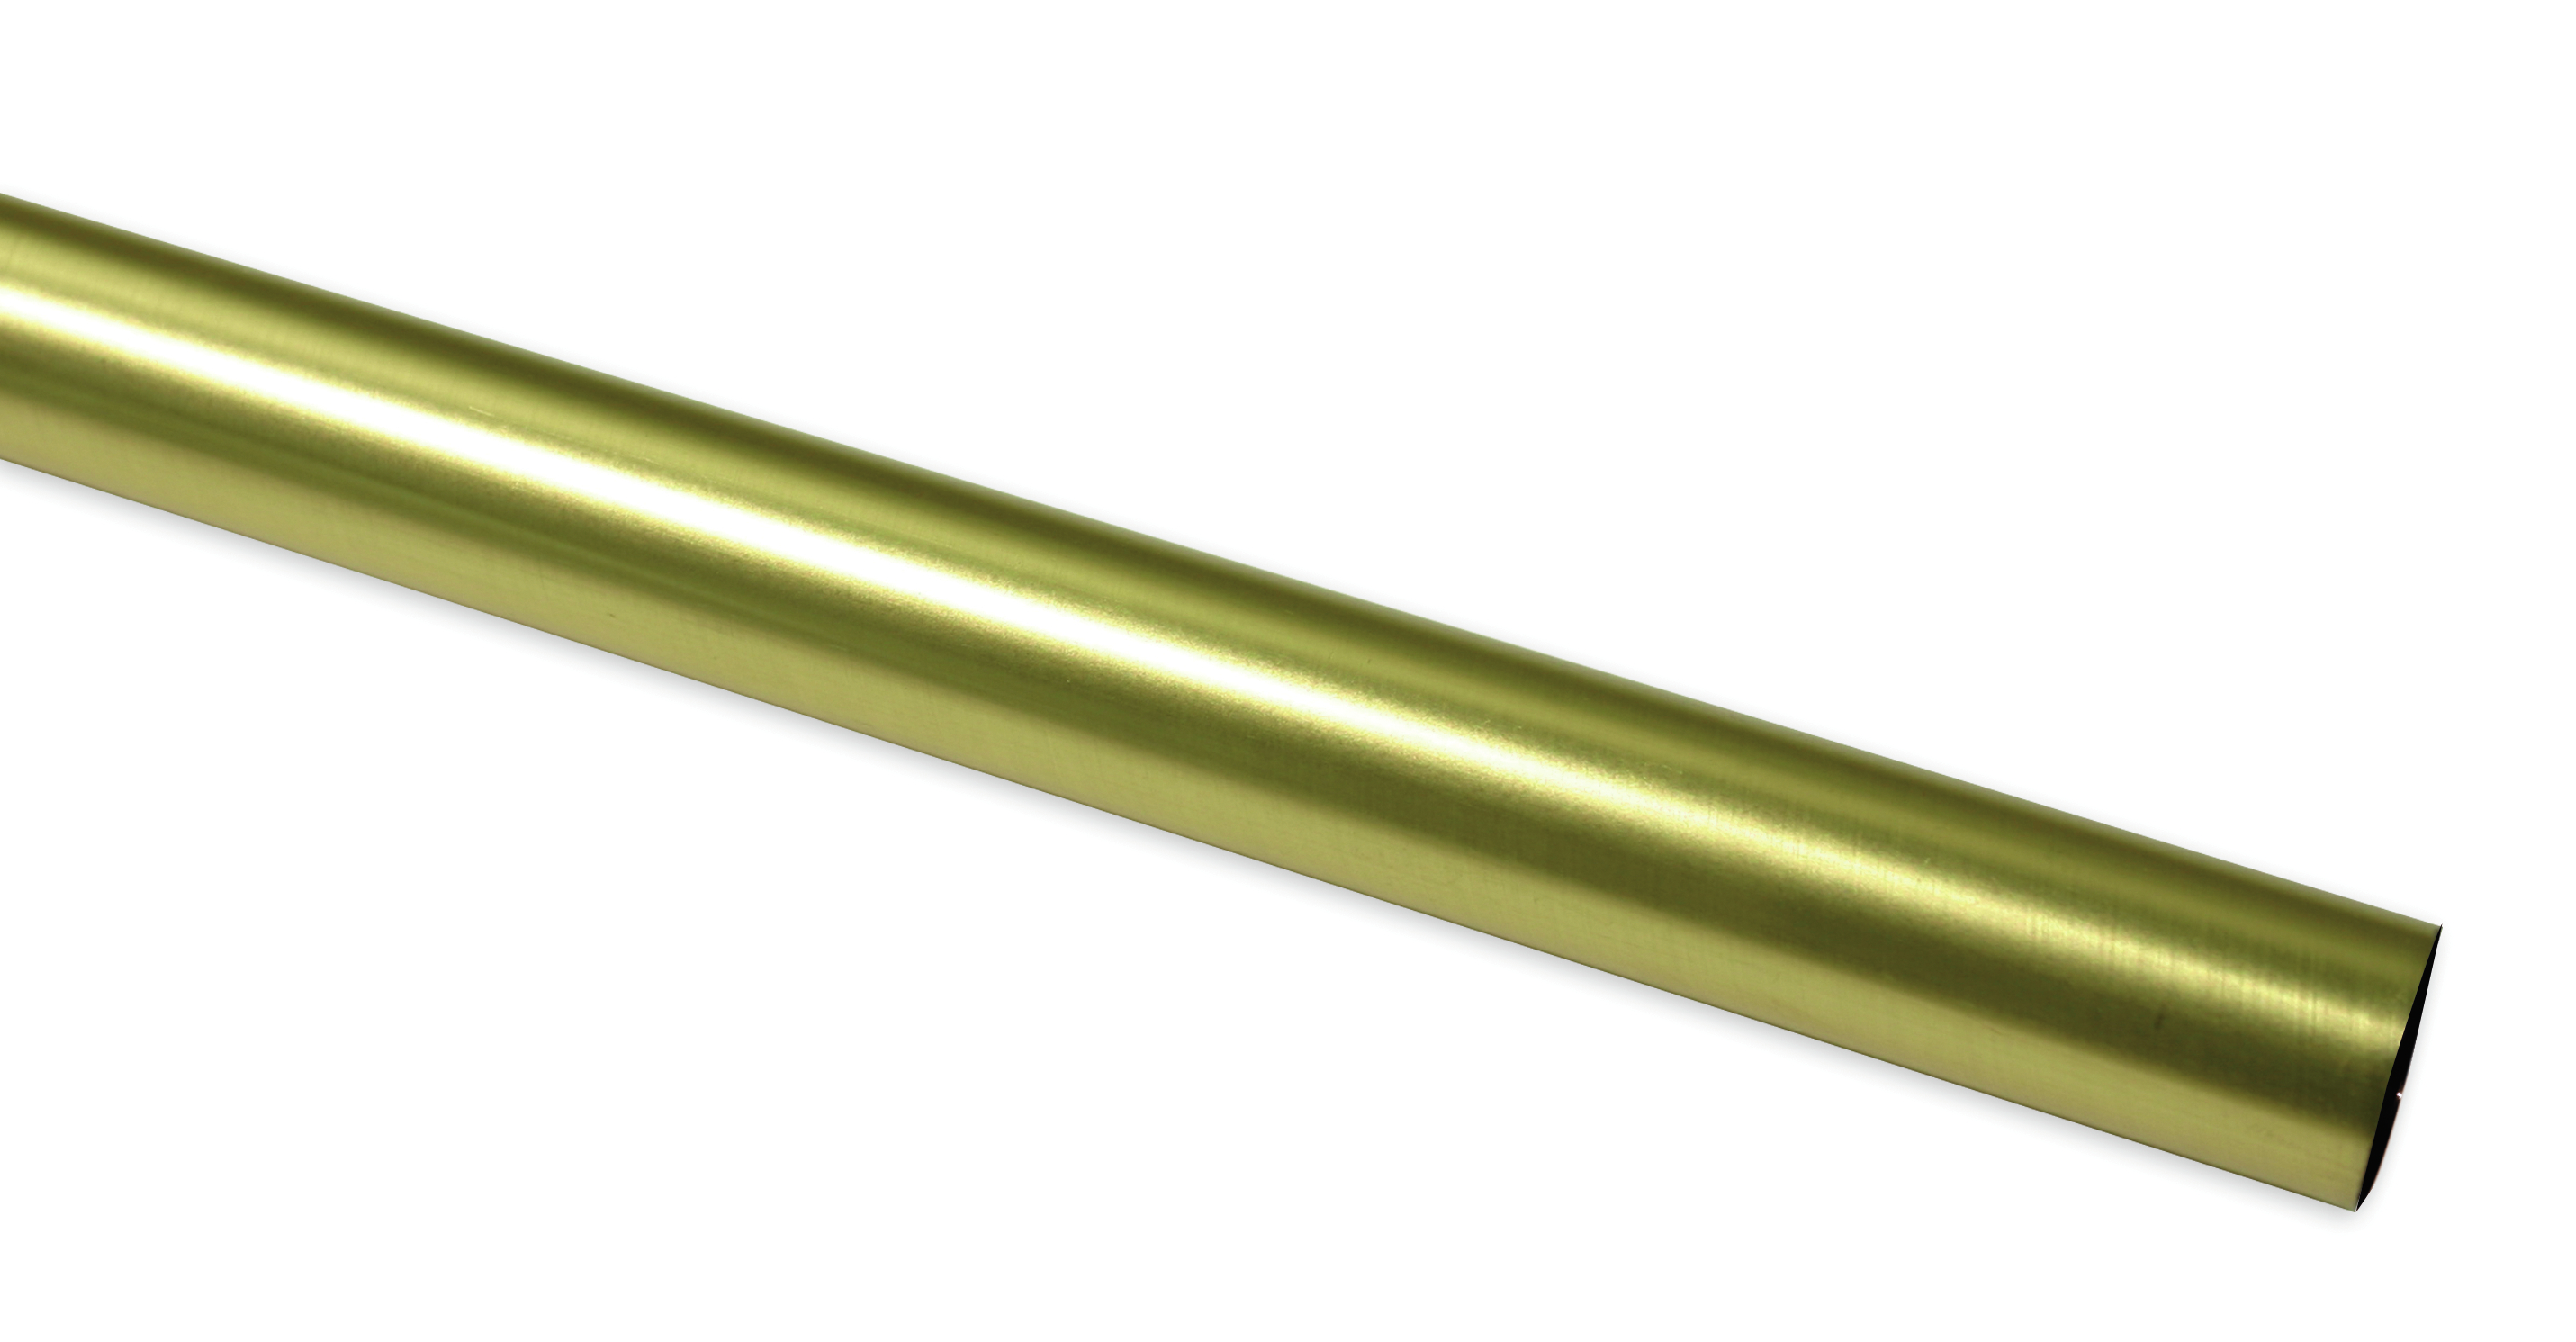 Záclonová tyč Europa 19/200cm, zlatá antika (Kov, od délky tyče 200cm doporučujeme použít třetí nosník.)